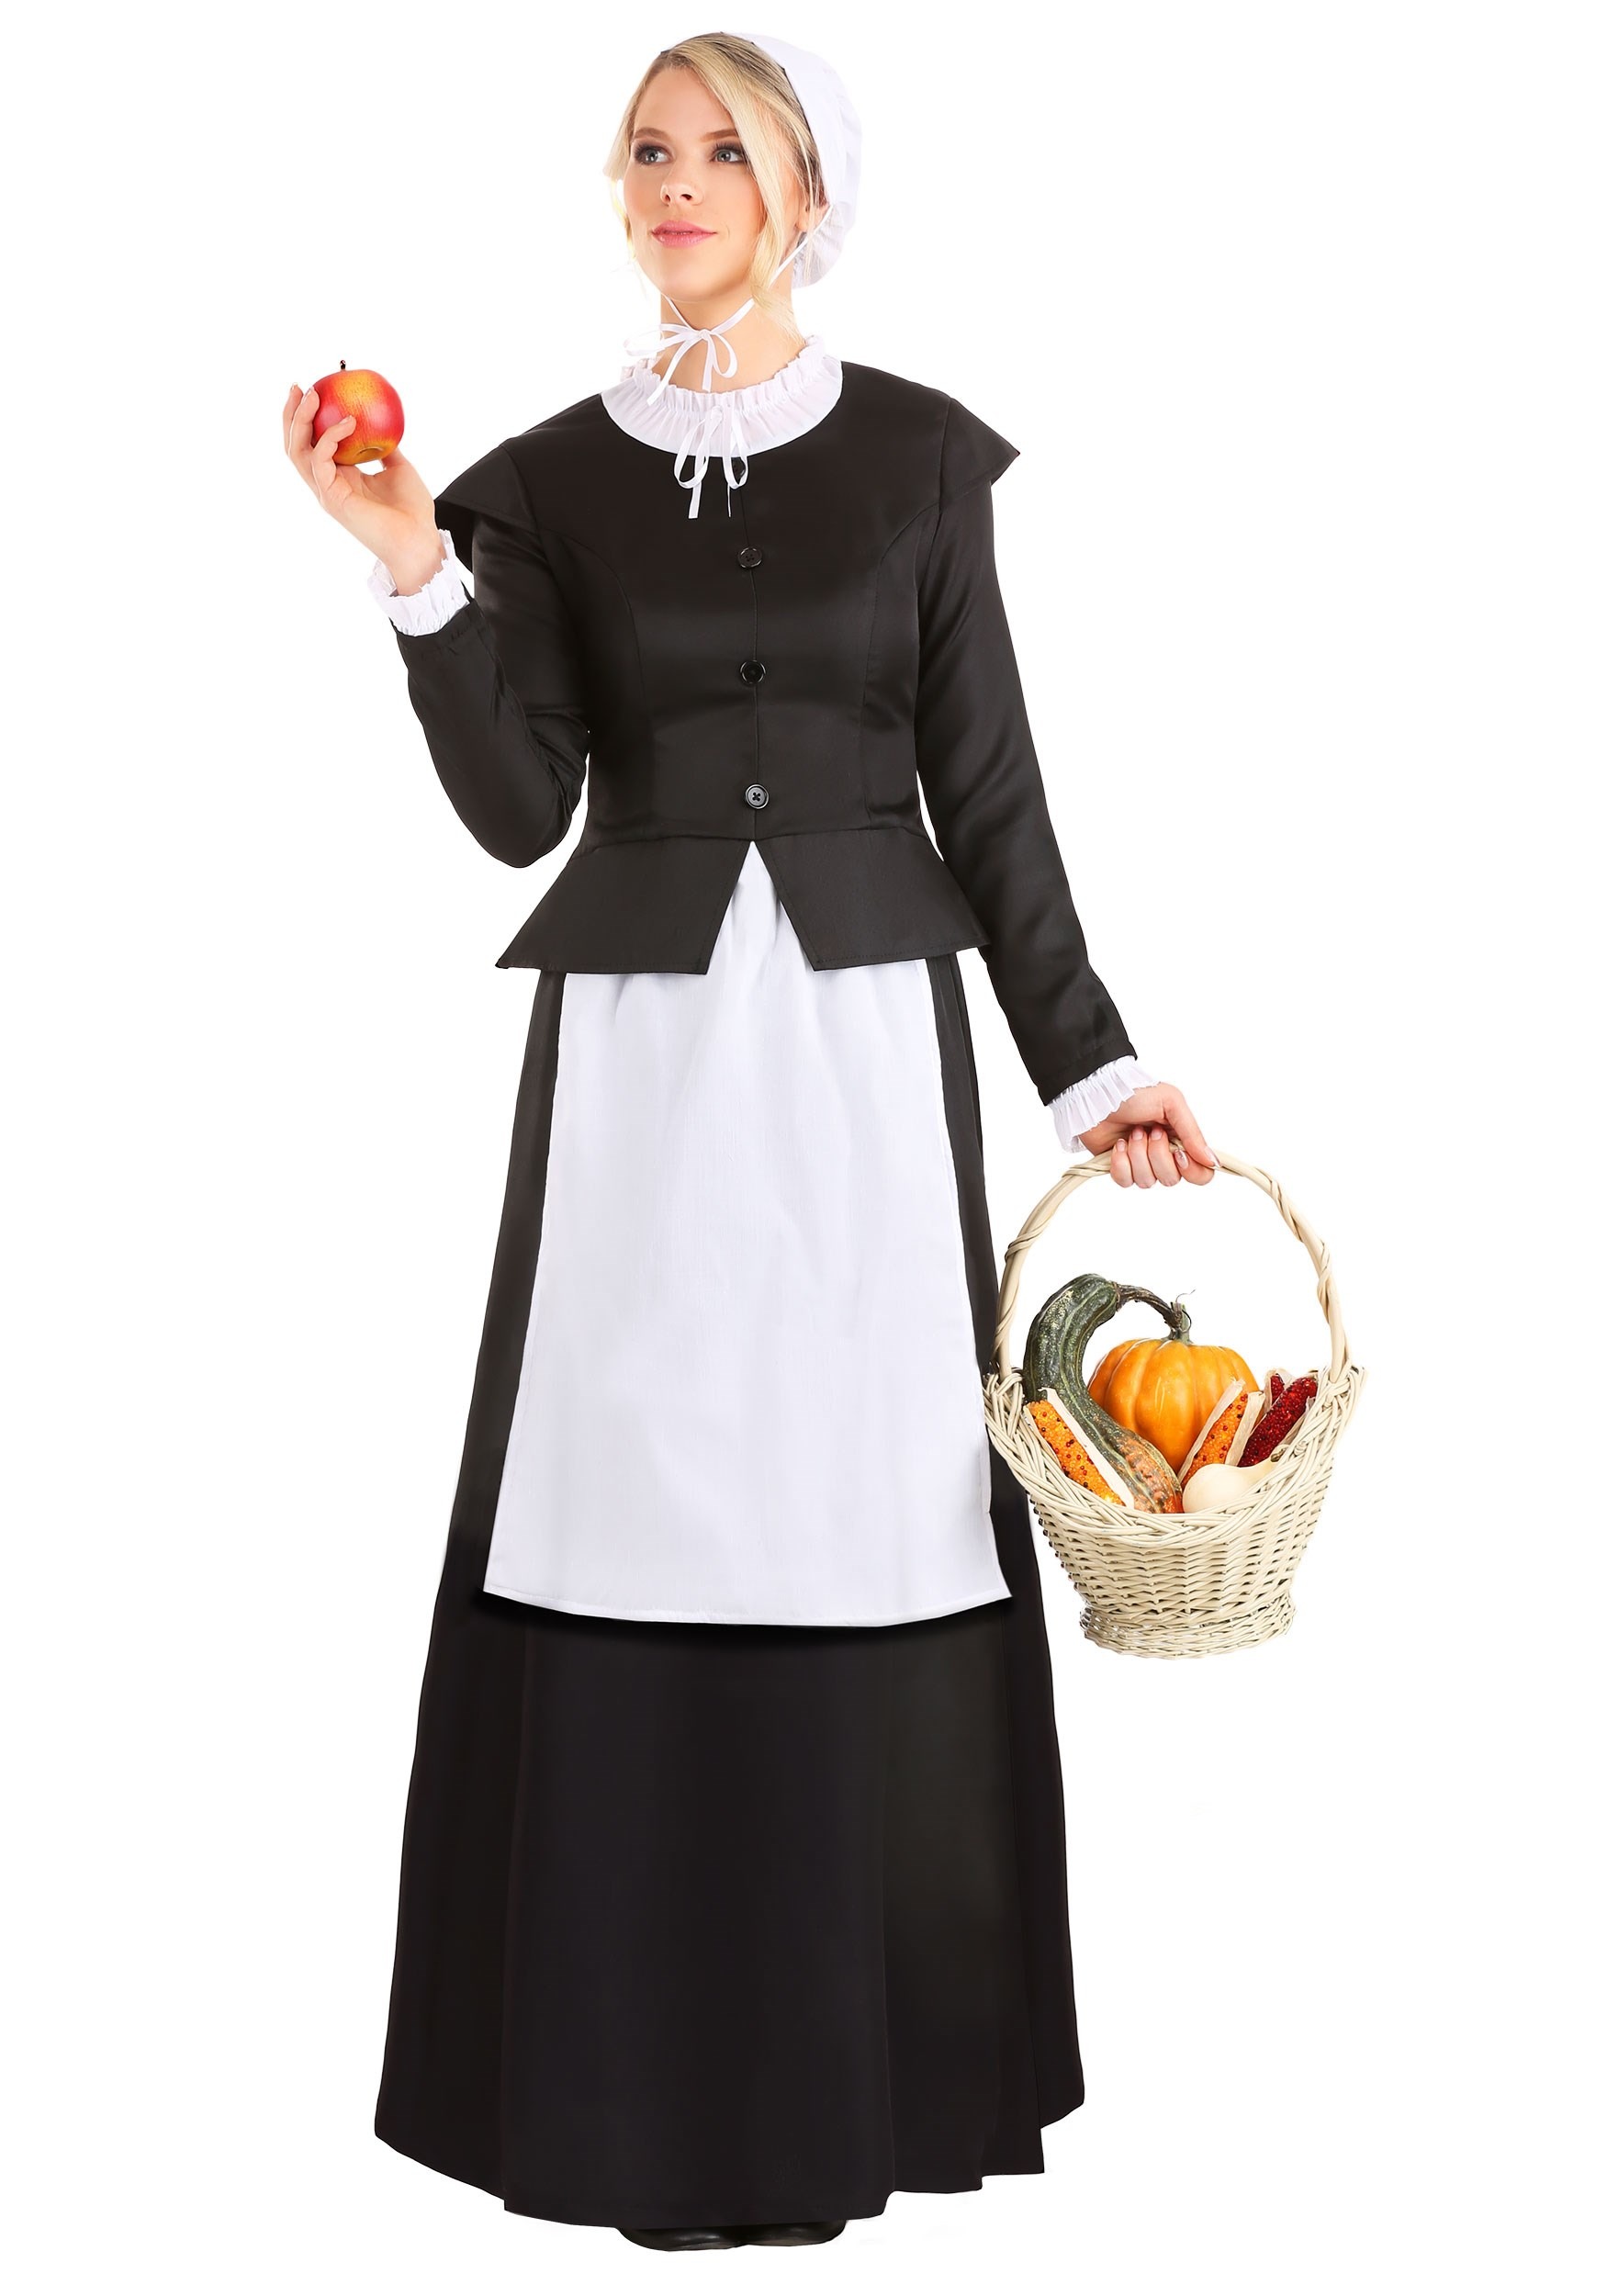 Thankful Pilgrim Costume for